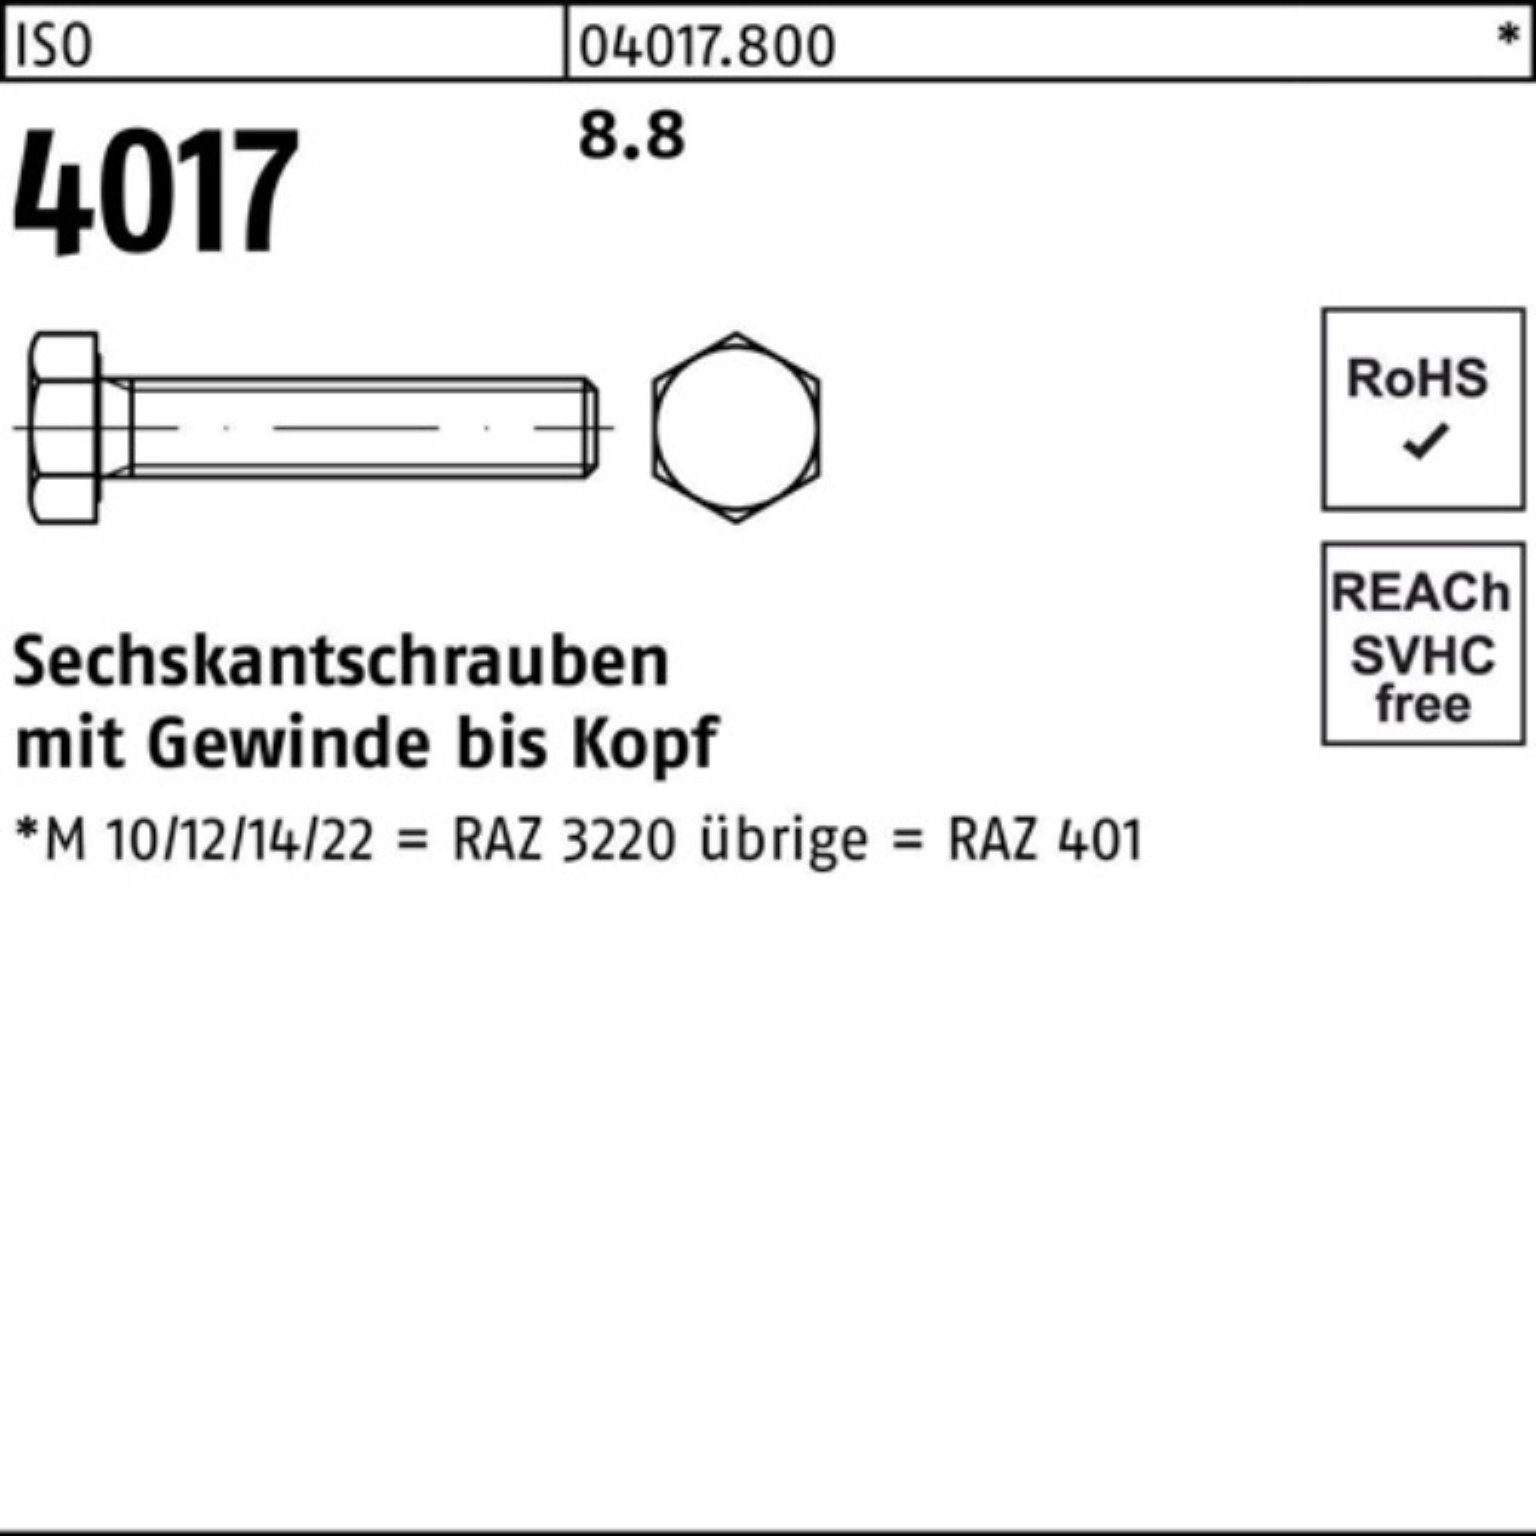 4017 ISO 8.8 Bufab 401 140 VG ISO Pack Sechskantschraube Stück 1 Sechskantschraube M45x 100er